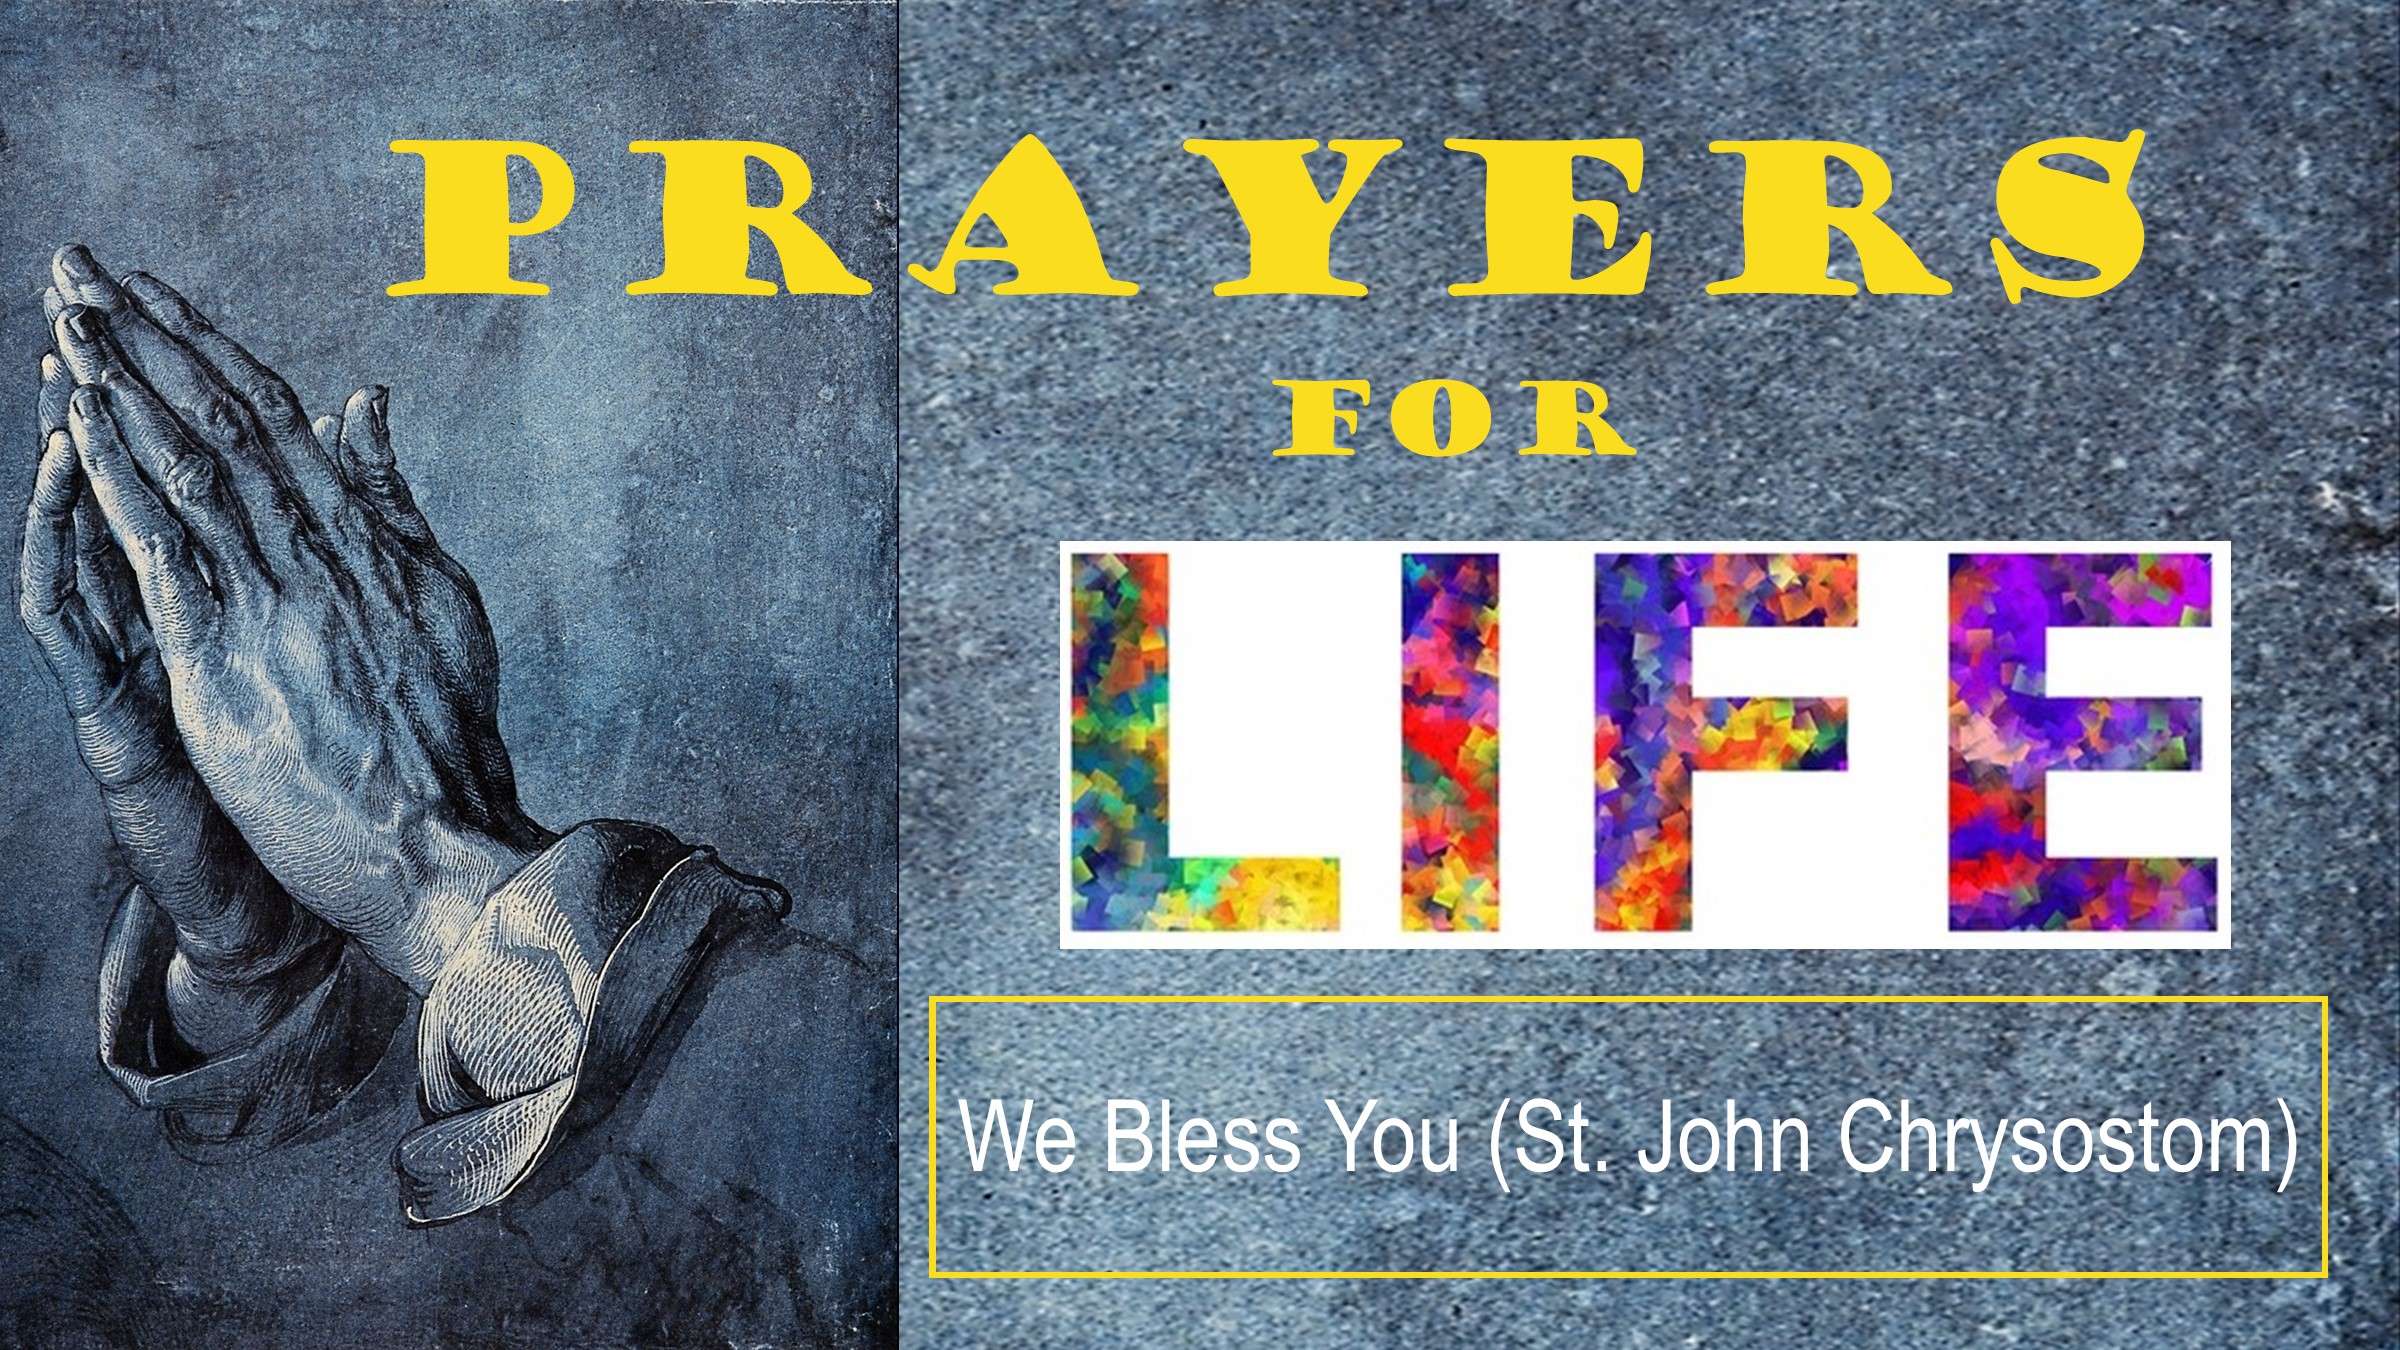 We Bless You (St. John Chrysostom)